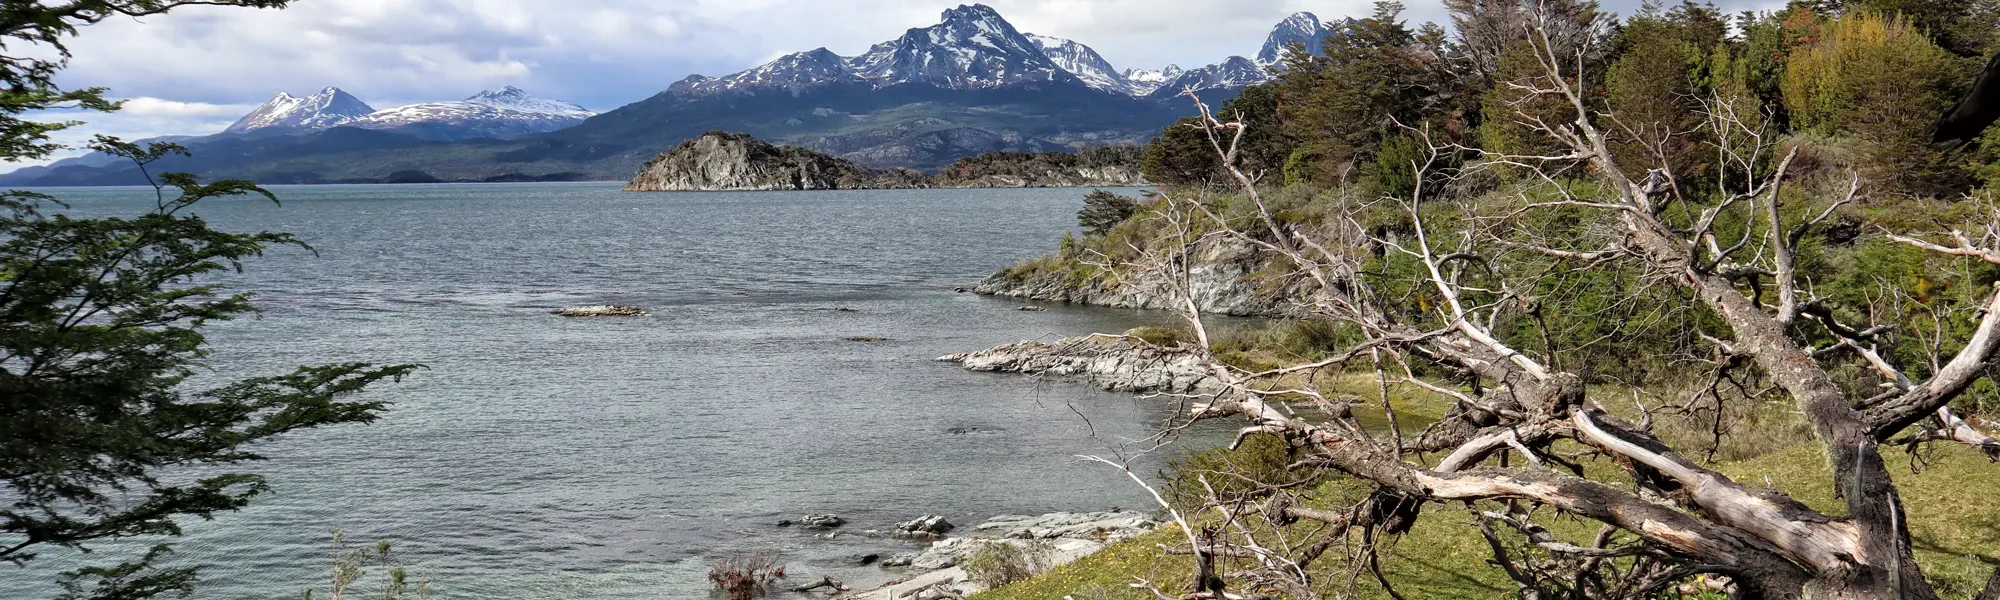 Tierra del Fuego Nationaal Park - Argentinië